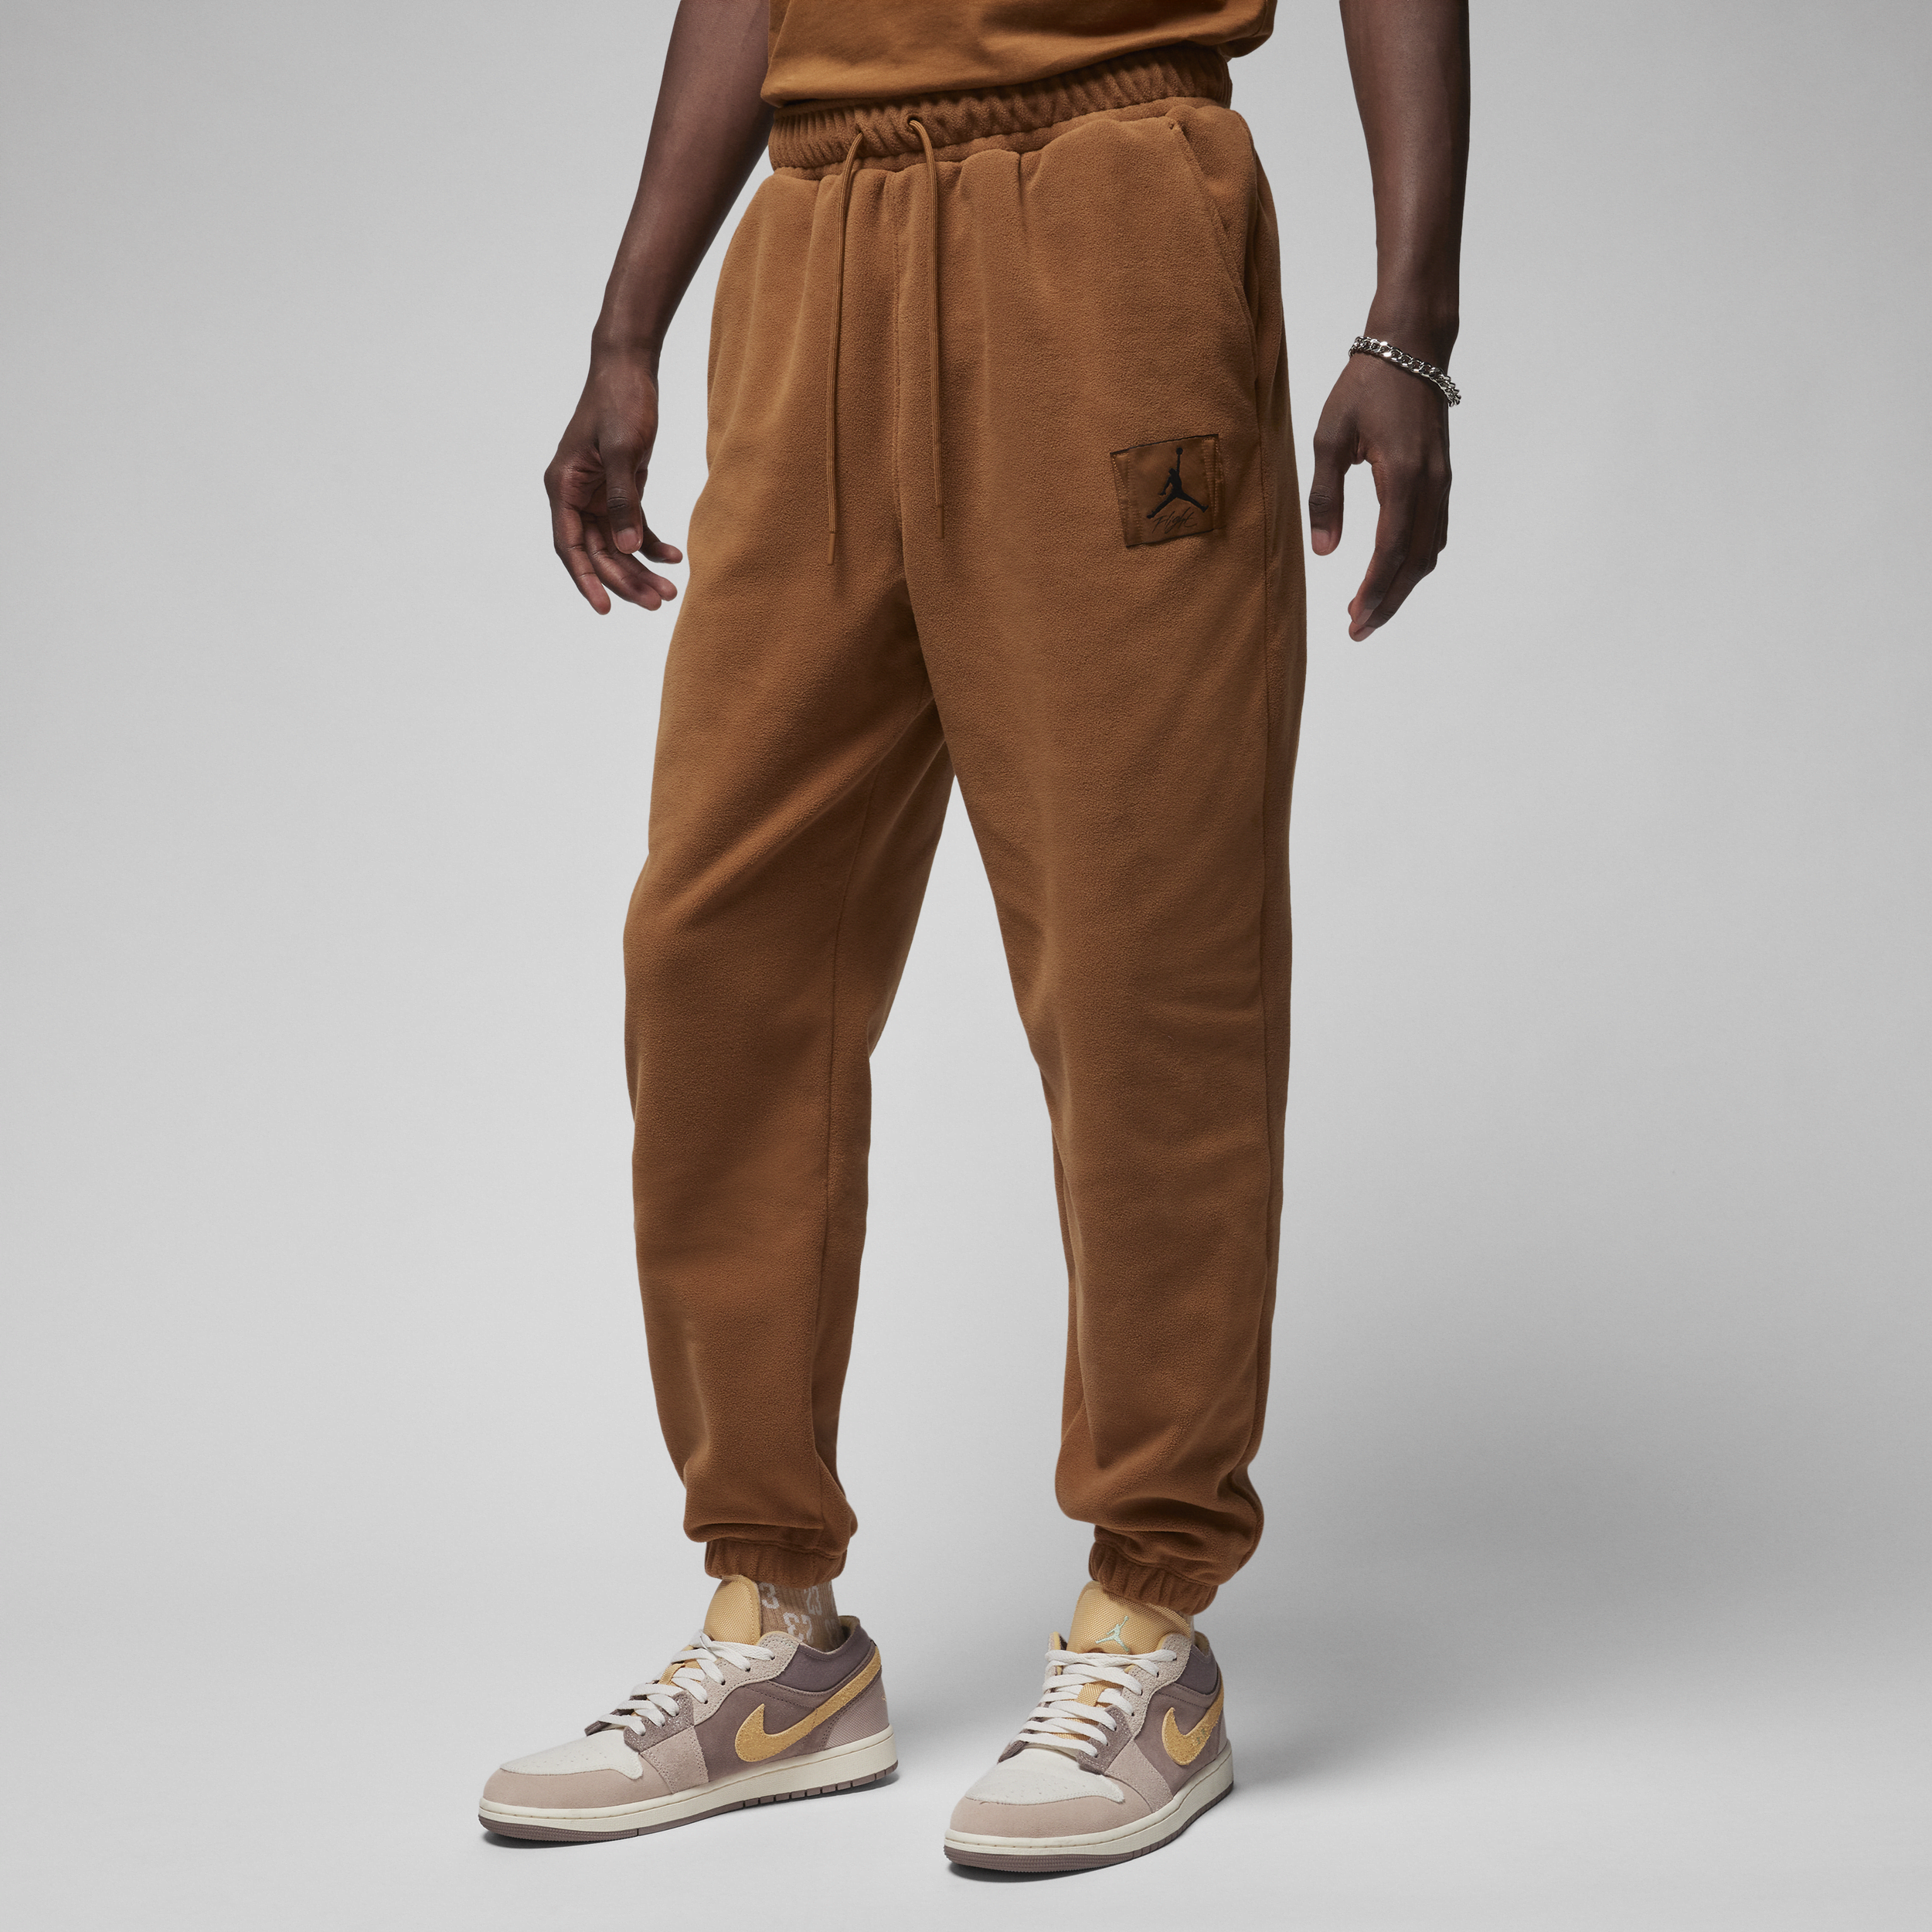 Jordan Essentials Pantalón de fútbol de tejido Fleece de invierno - Hombre - Marrón